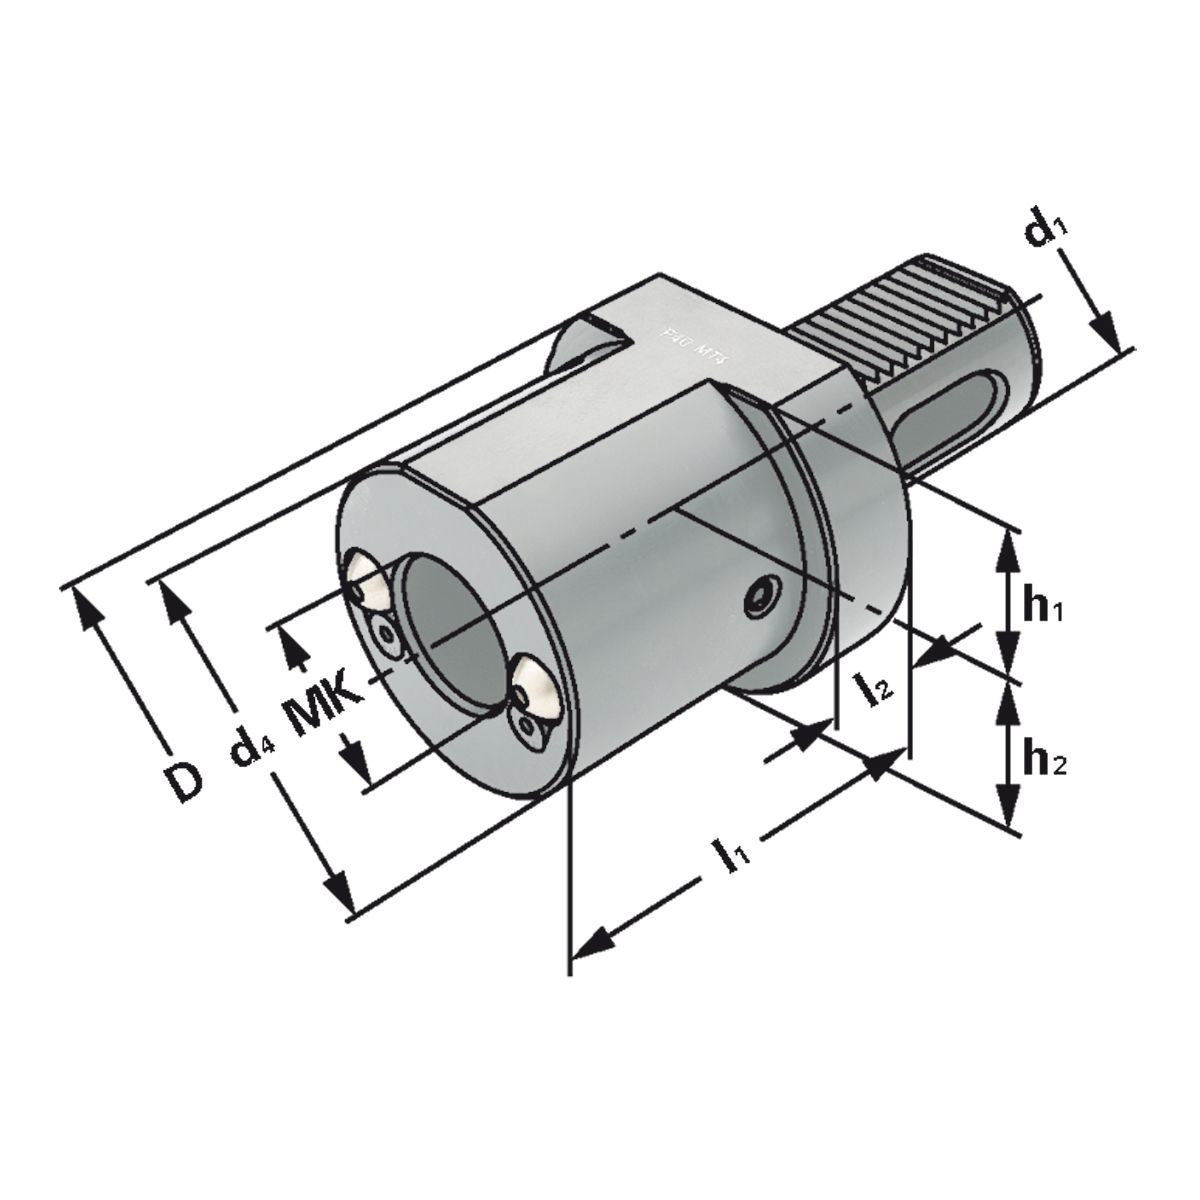 Bohrerhalter für MK-Werkzeuge F1-20xMK2 DIN 69880 (ISO 10889)